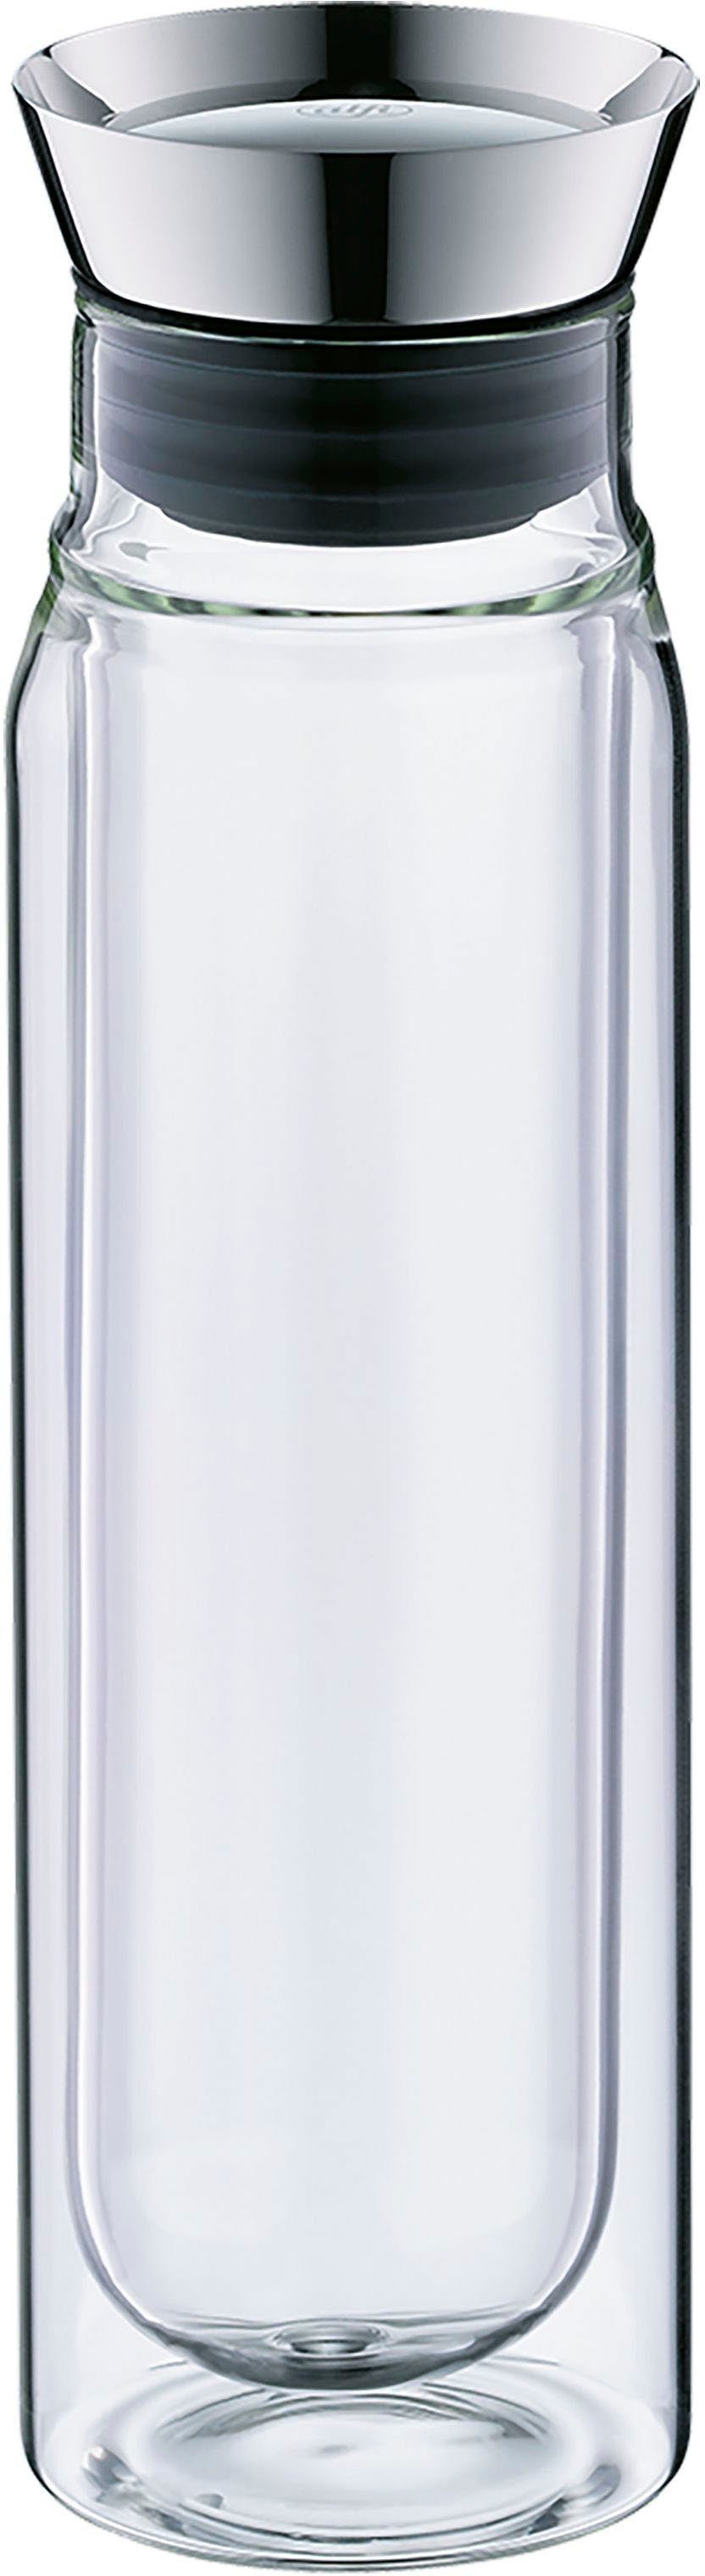 Alfi Wasserkaraffe FLOWMOTION, 750 ml, handgefertigt und mundgeblasen